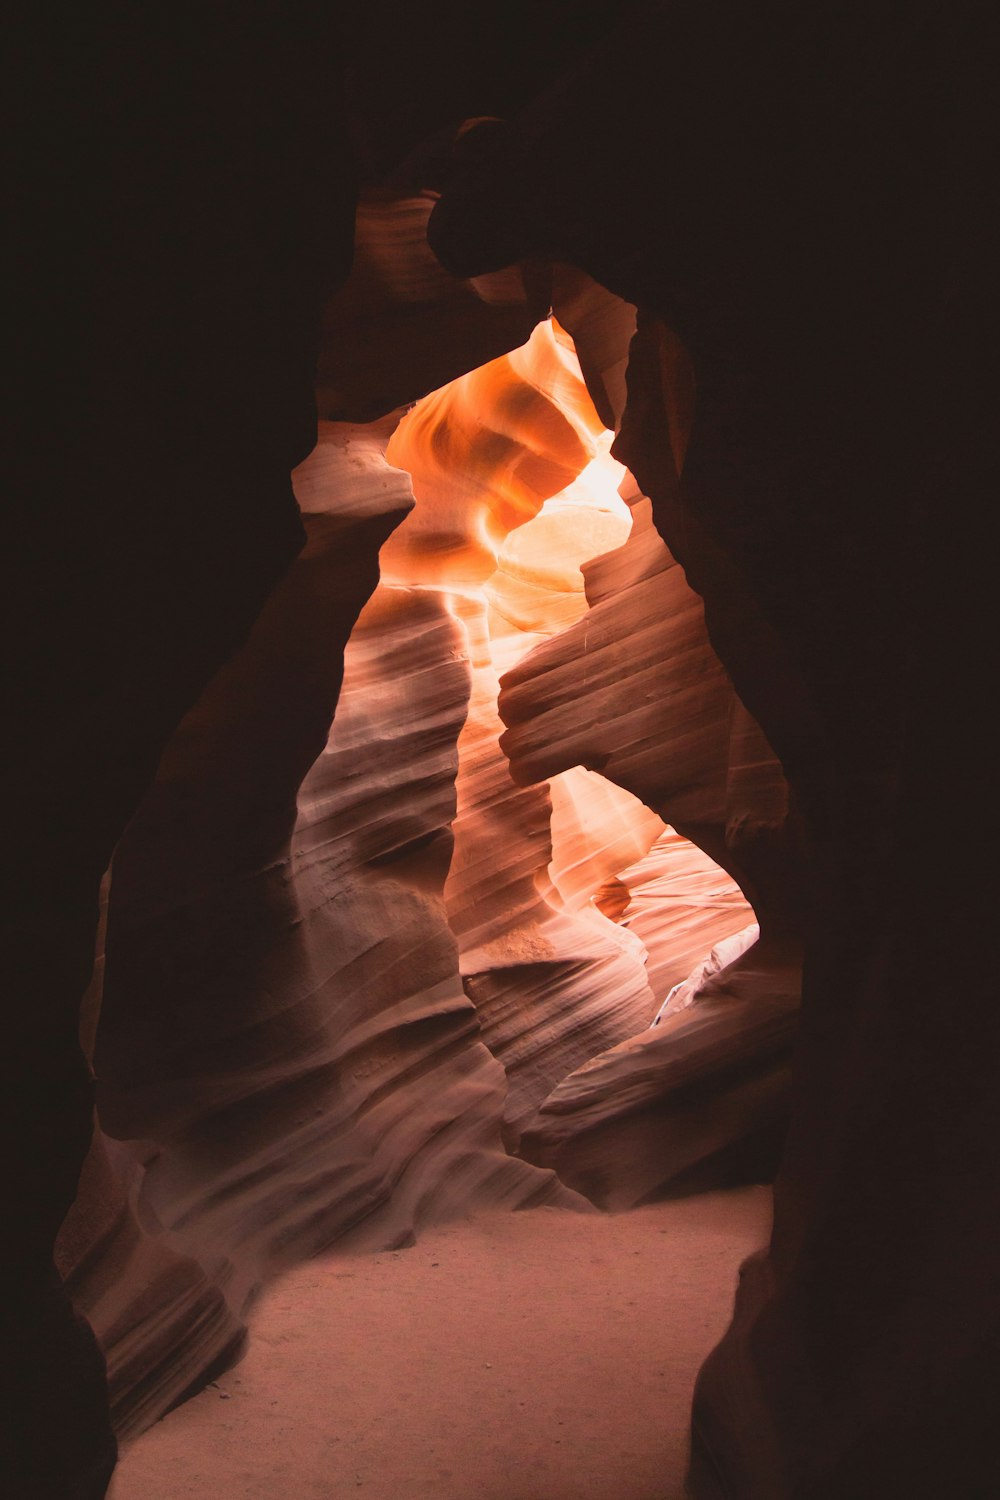 Das Licht scheint durch die Felsen in der Wüste